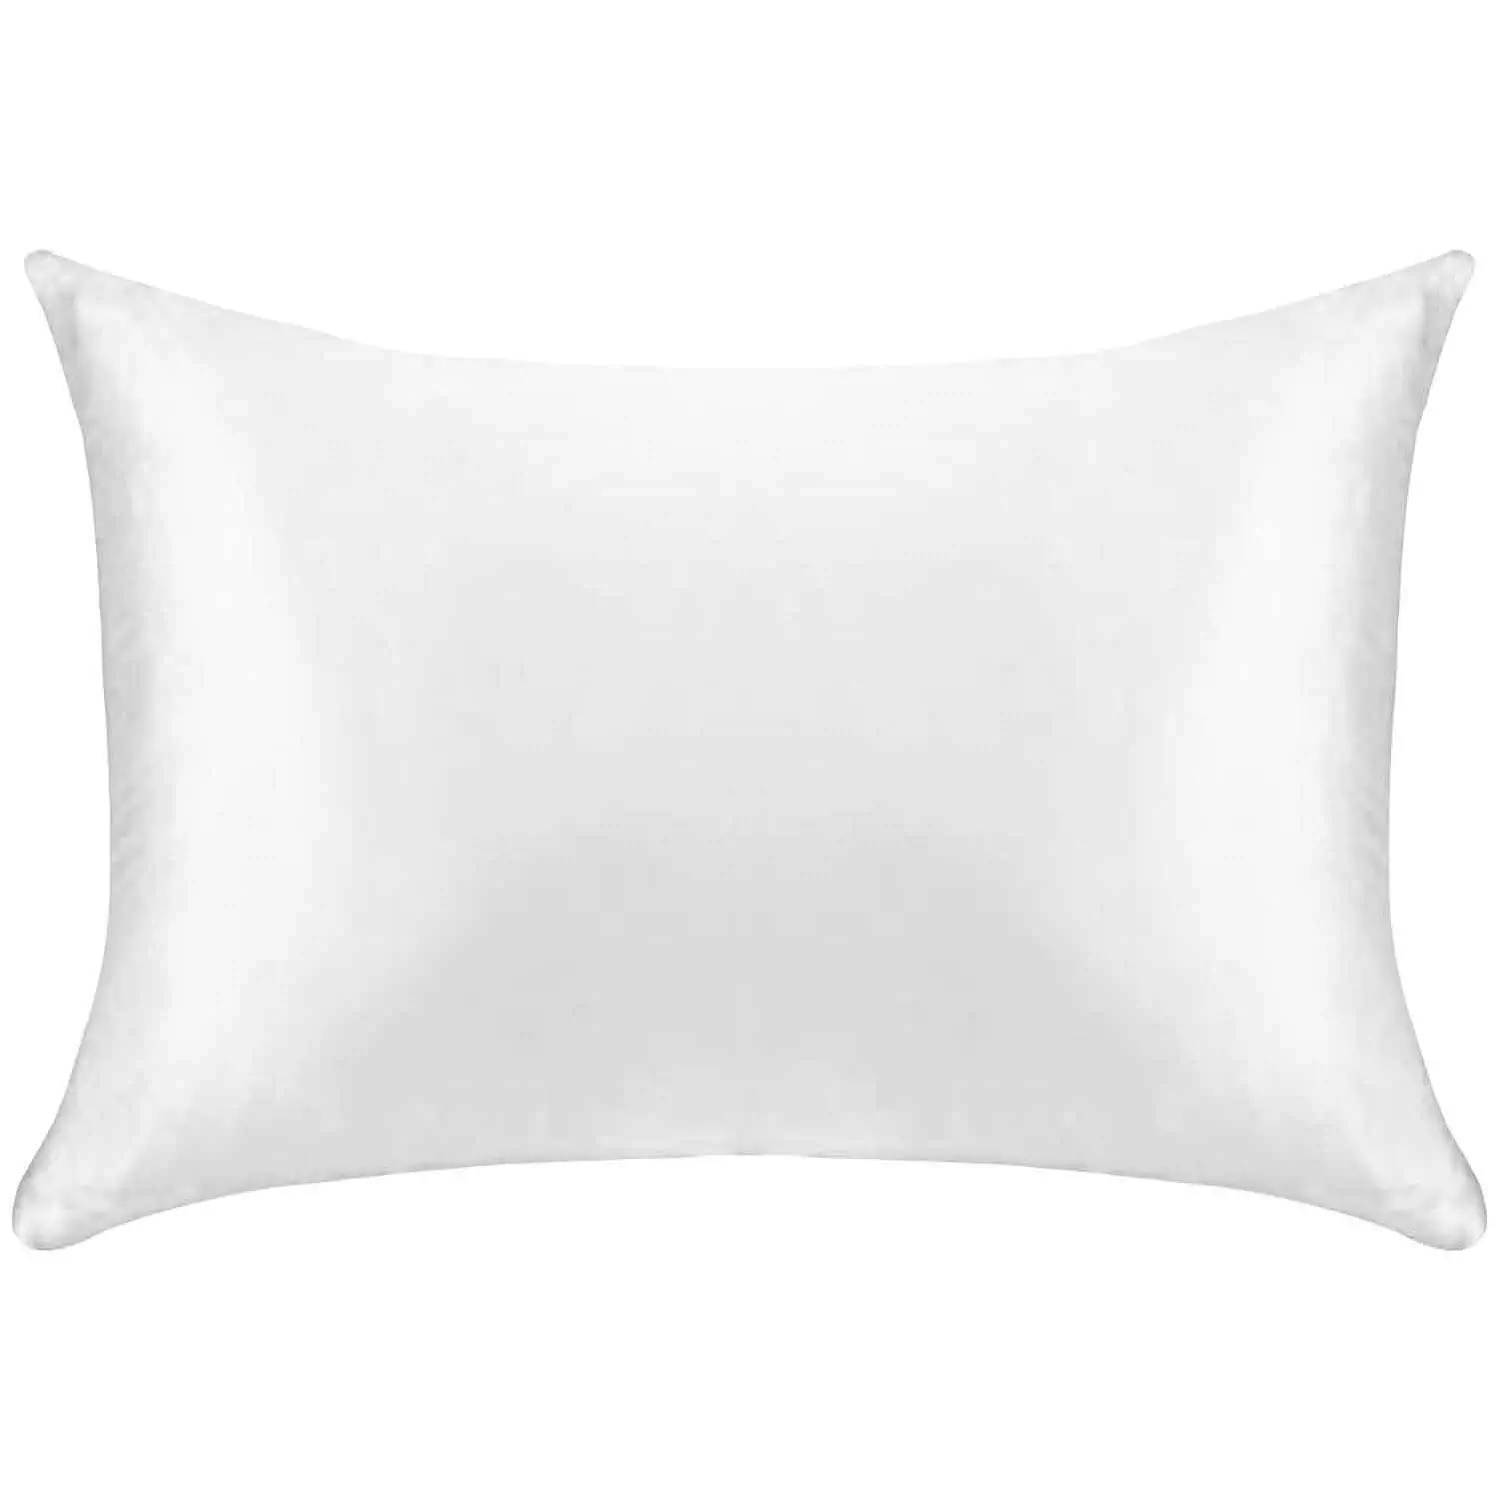 White satin pillowcases, pk. of 2